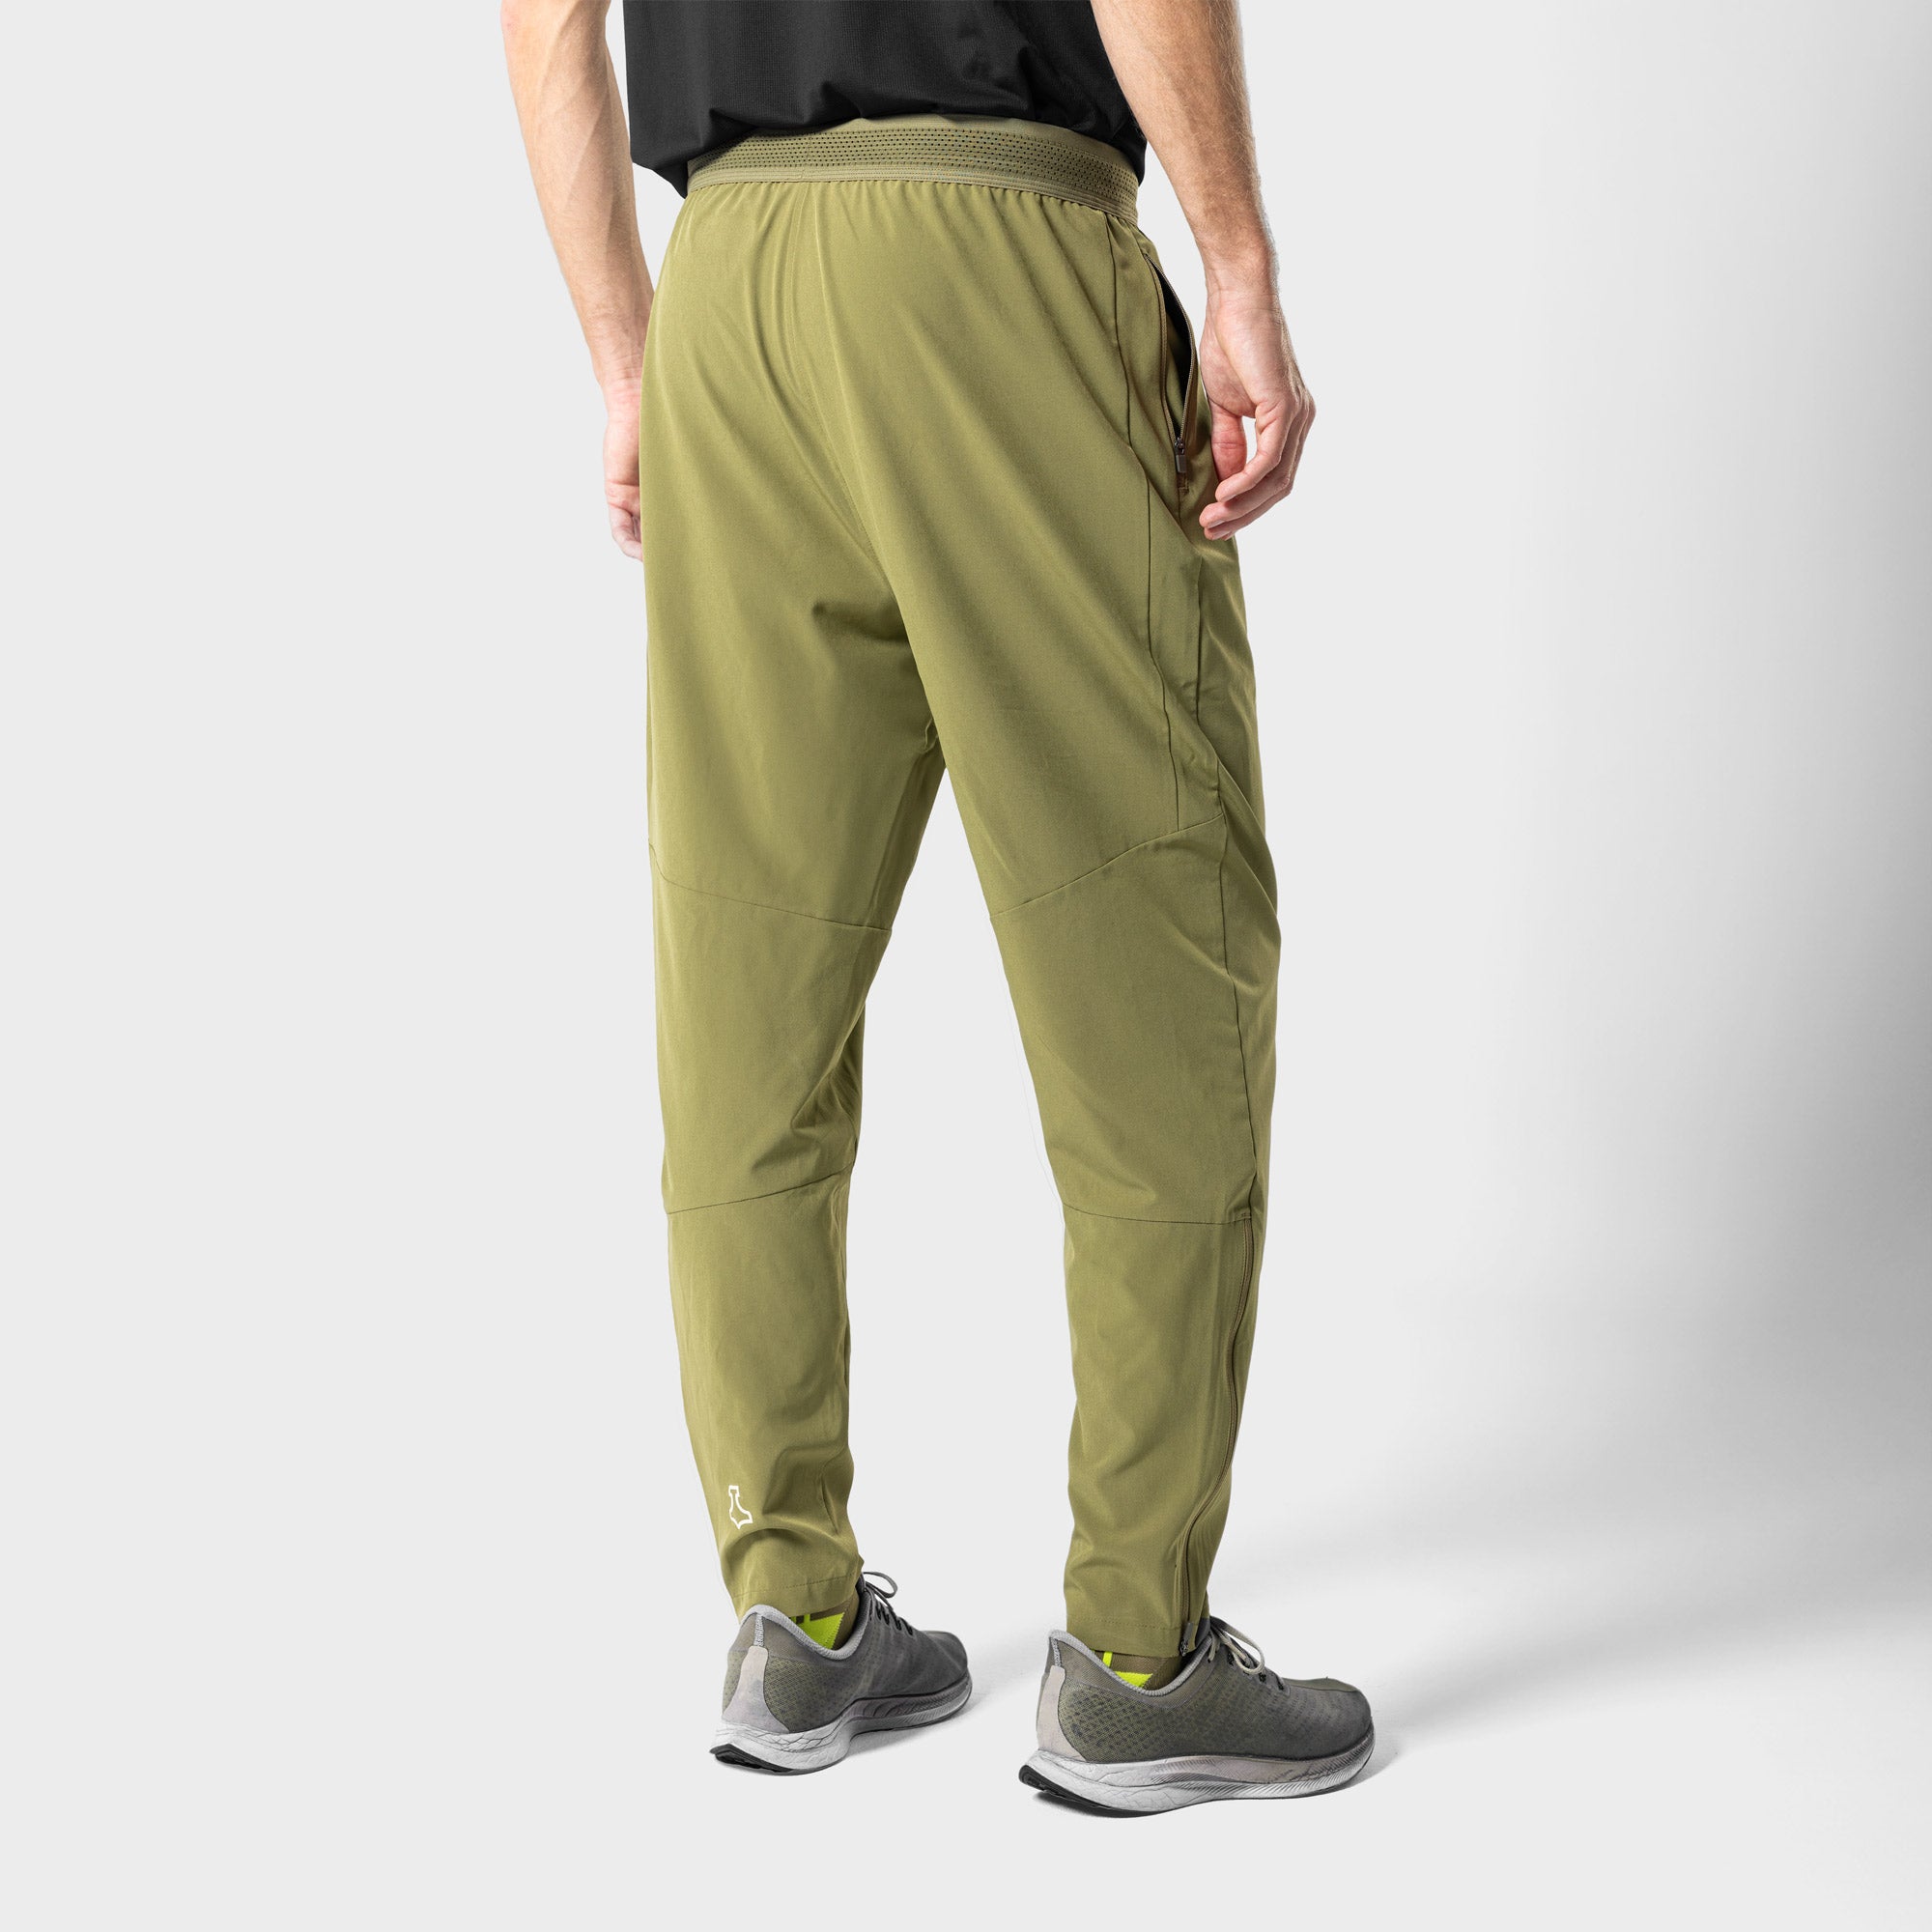 Liiteguard RE-LIITE LONG PANTS (MEN) Trousers Dusty Green